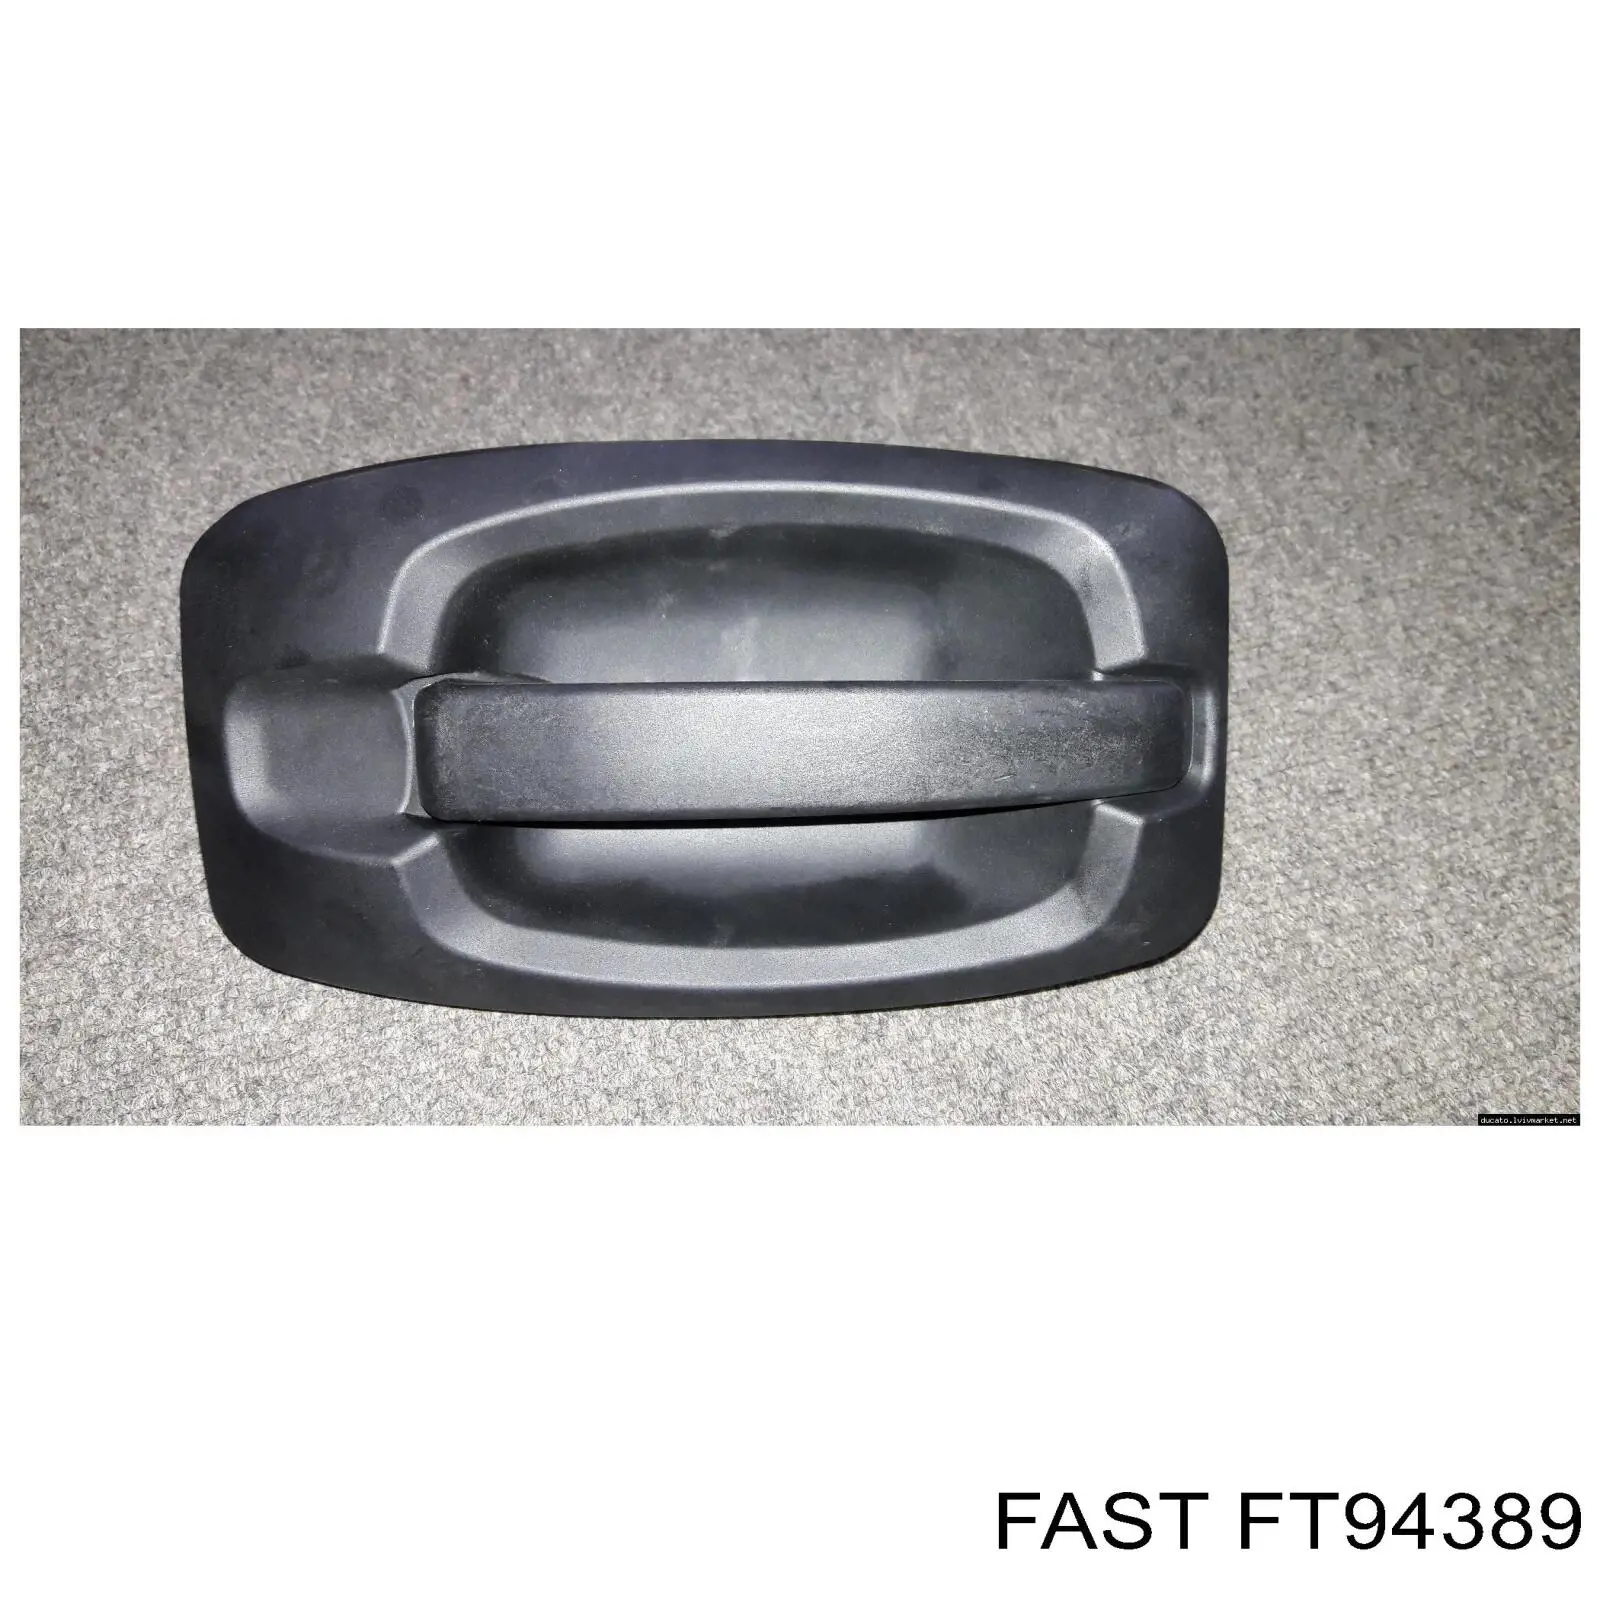 FT94389 Fast tirador de puerta exterior trasero